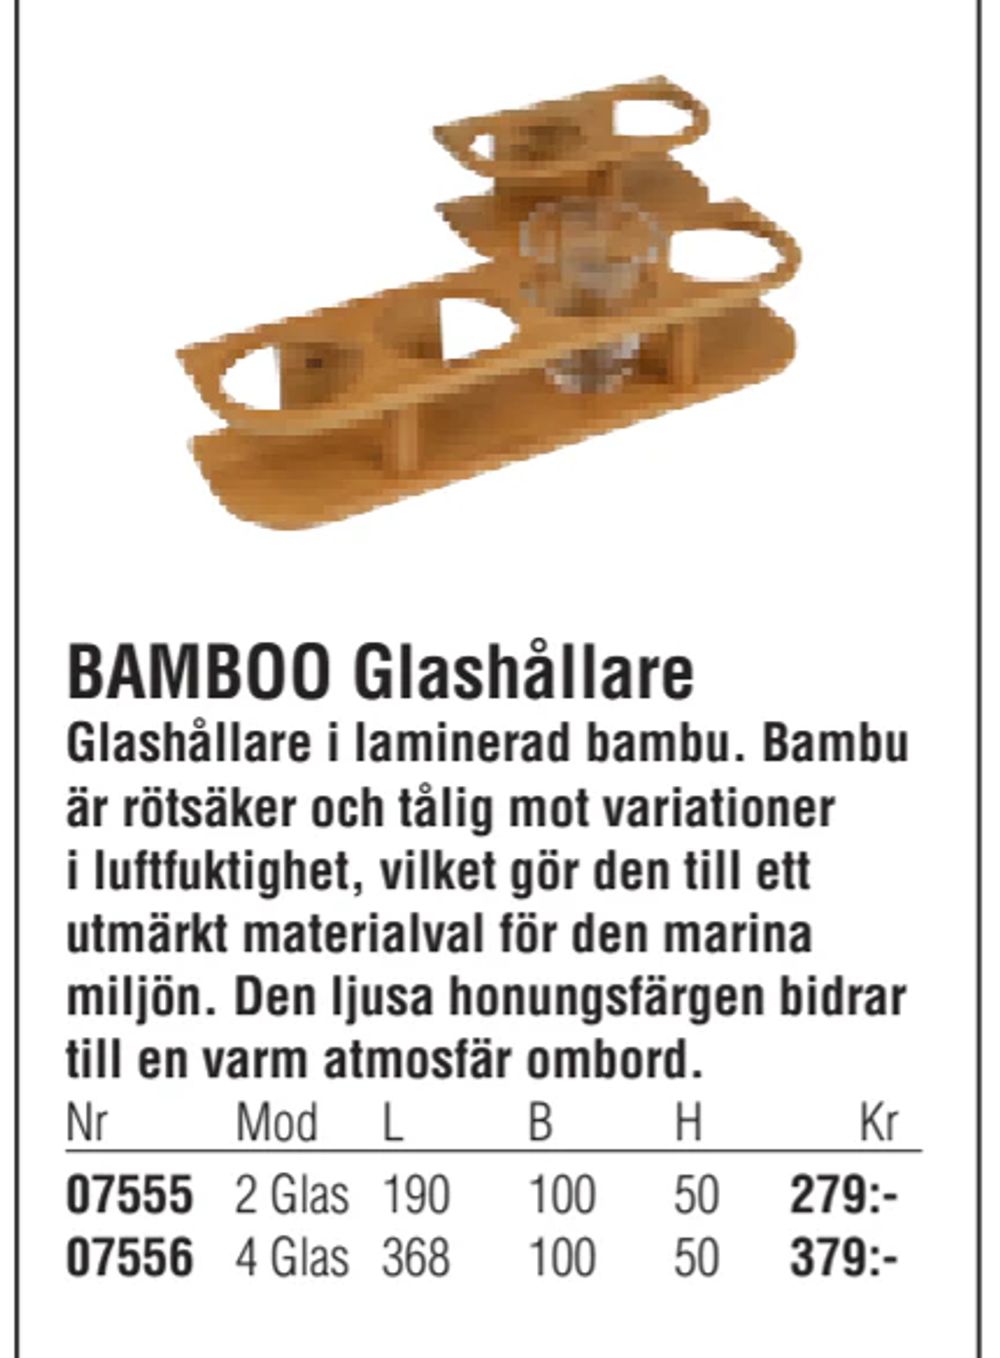 Erbjudanden på BAMBOO Glashållare från Erlandsons Brygga för 279 kr